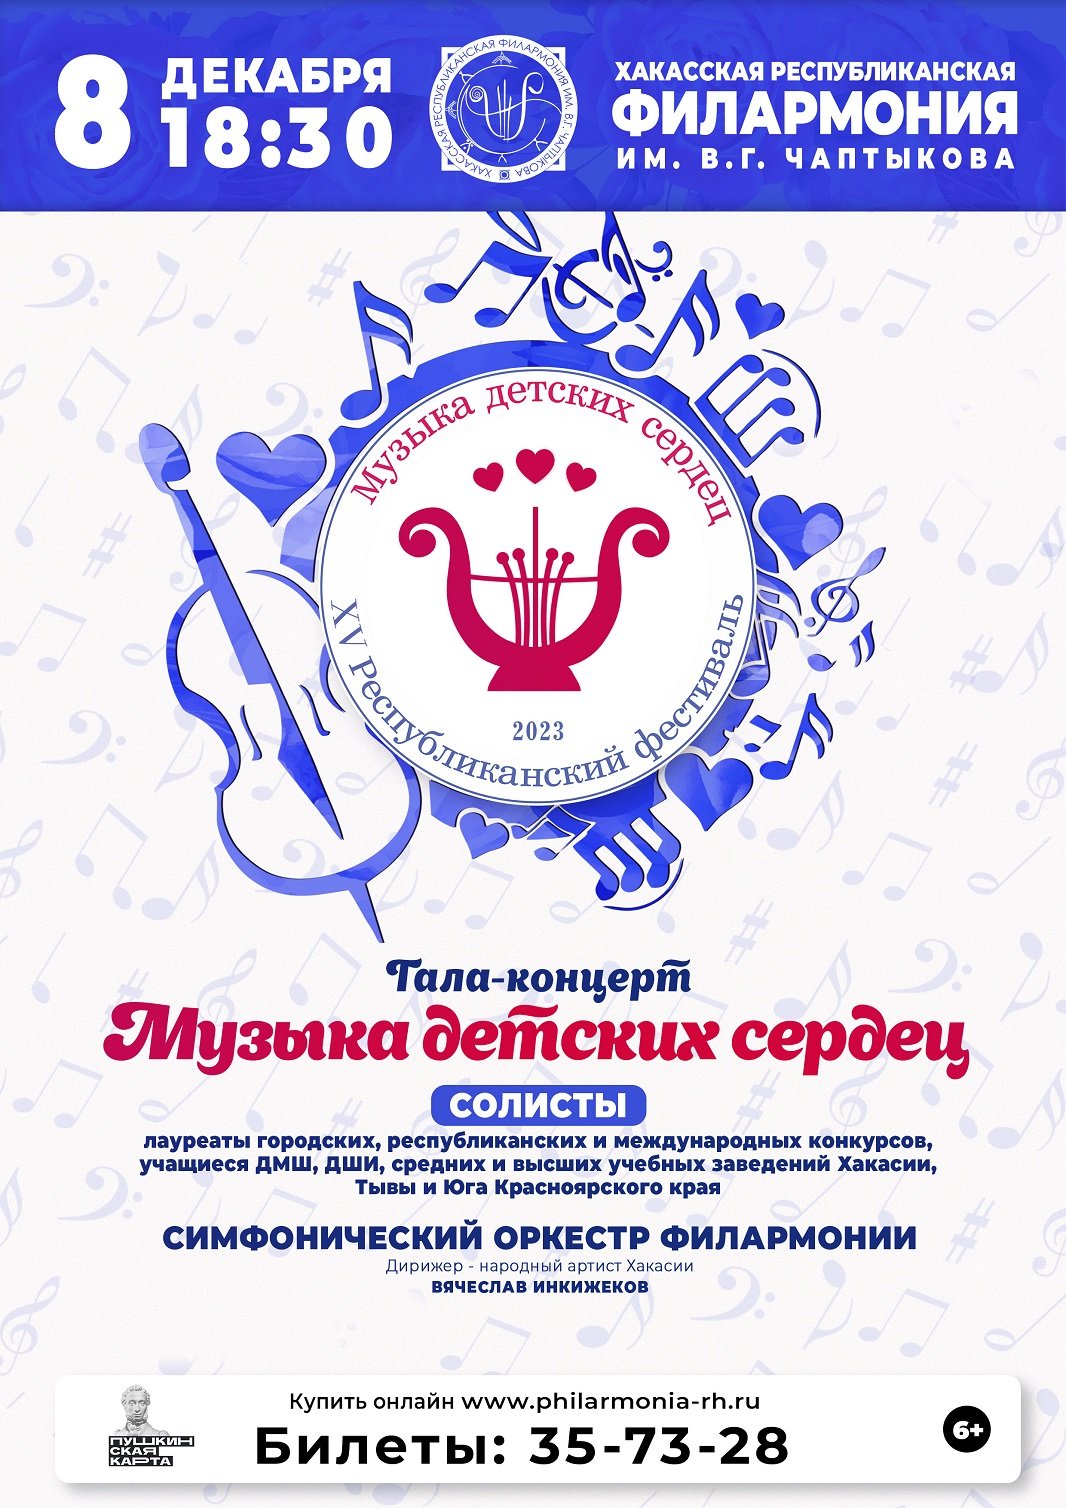 Гала-концерт XV Республиканского фестиваля «Музыка детских сердец» -  Концерты - Афиша